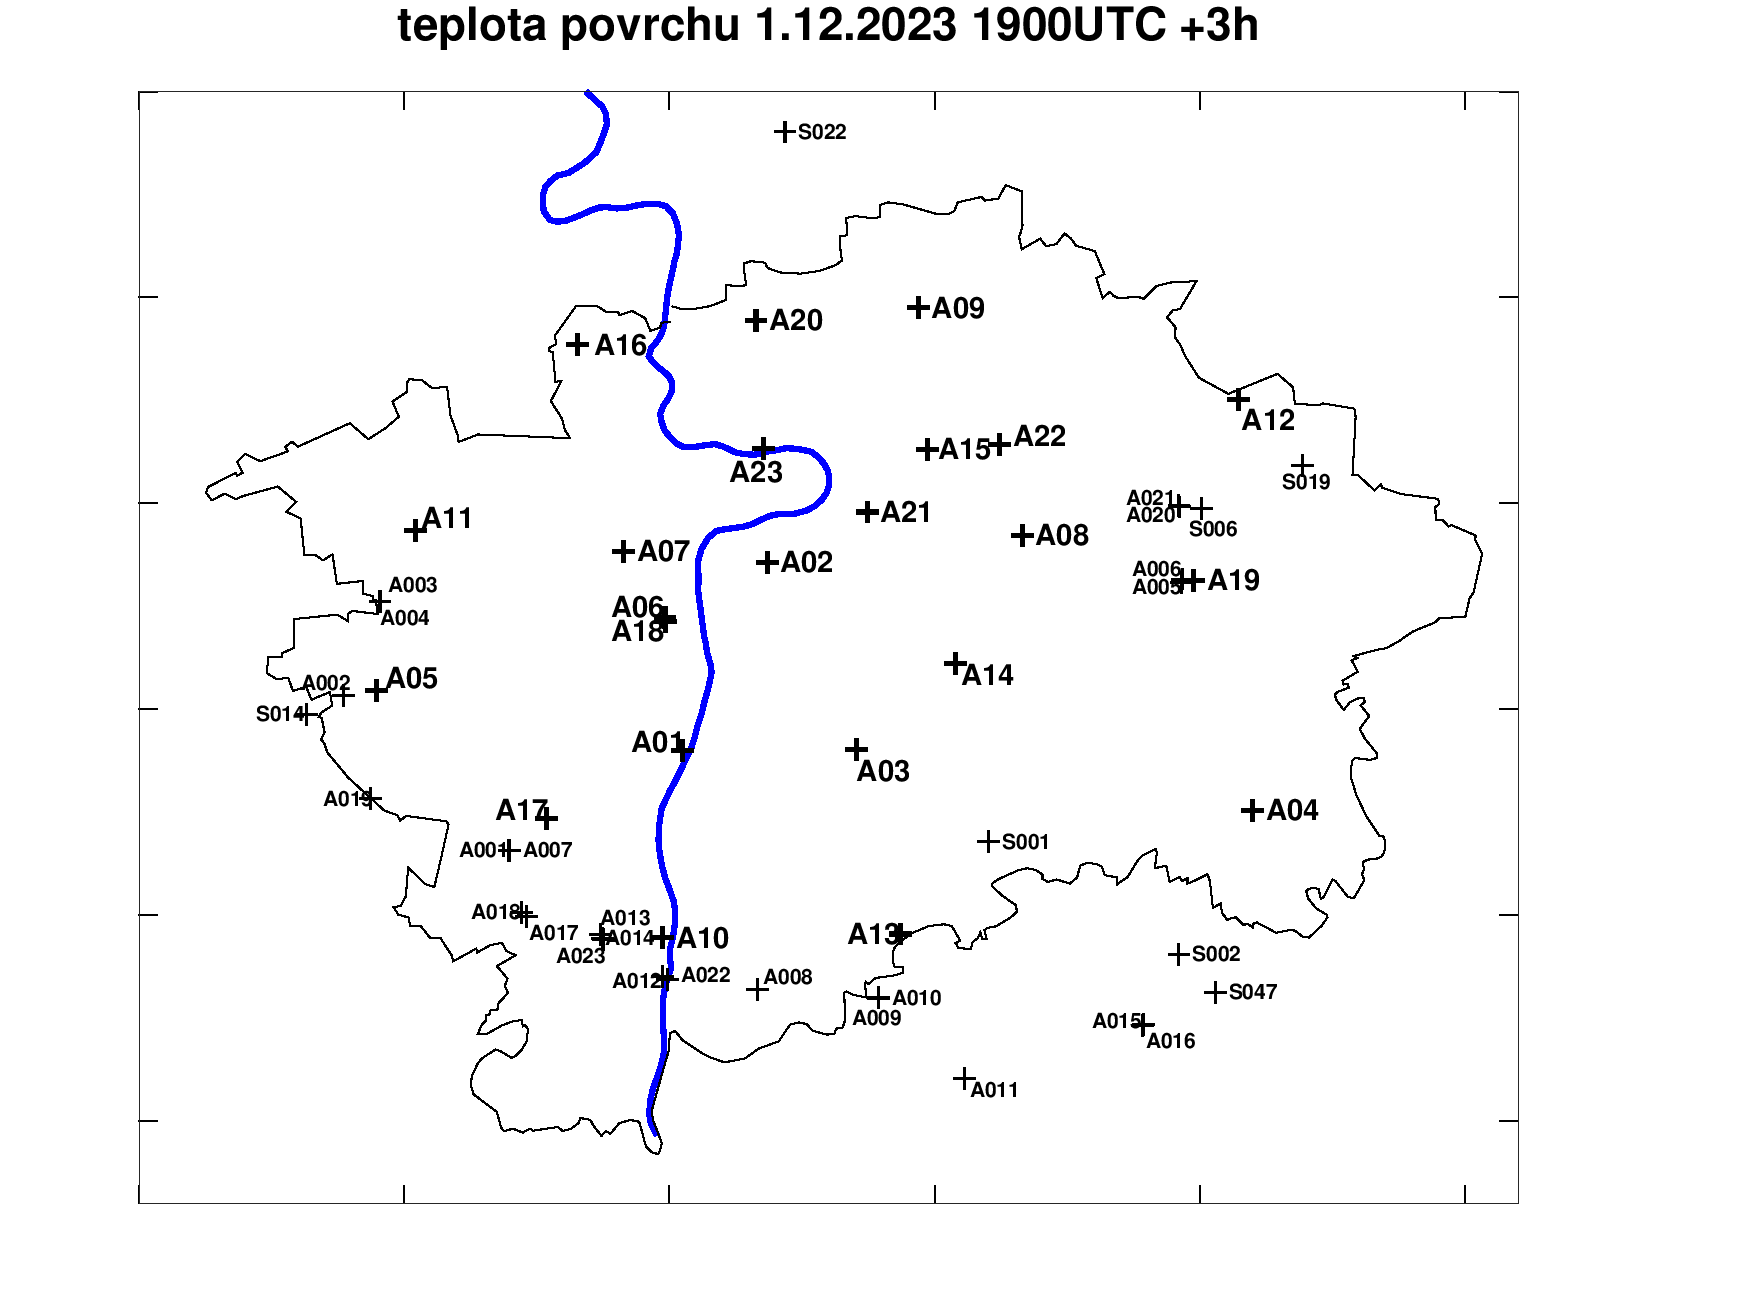 Předpověď teploty povrchu pražských silnic +3h